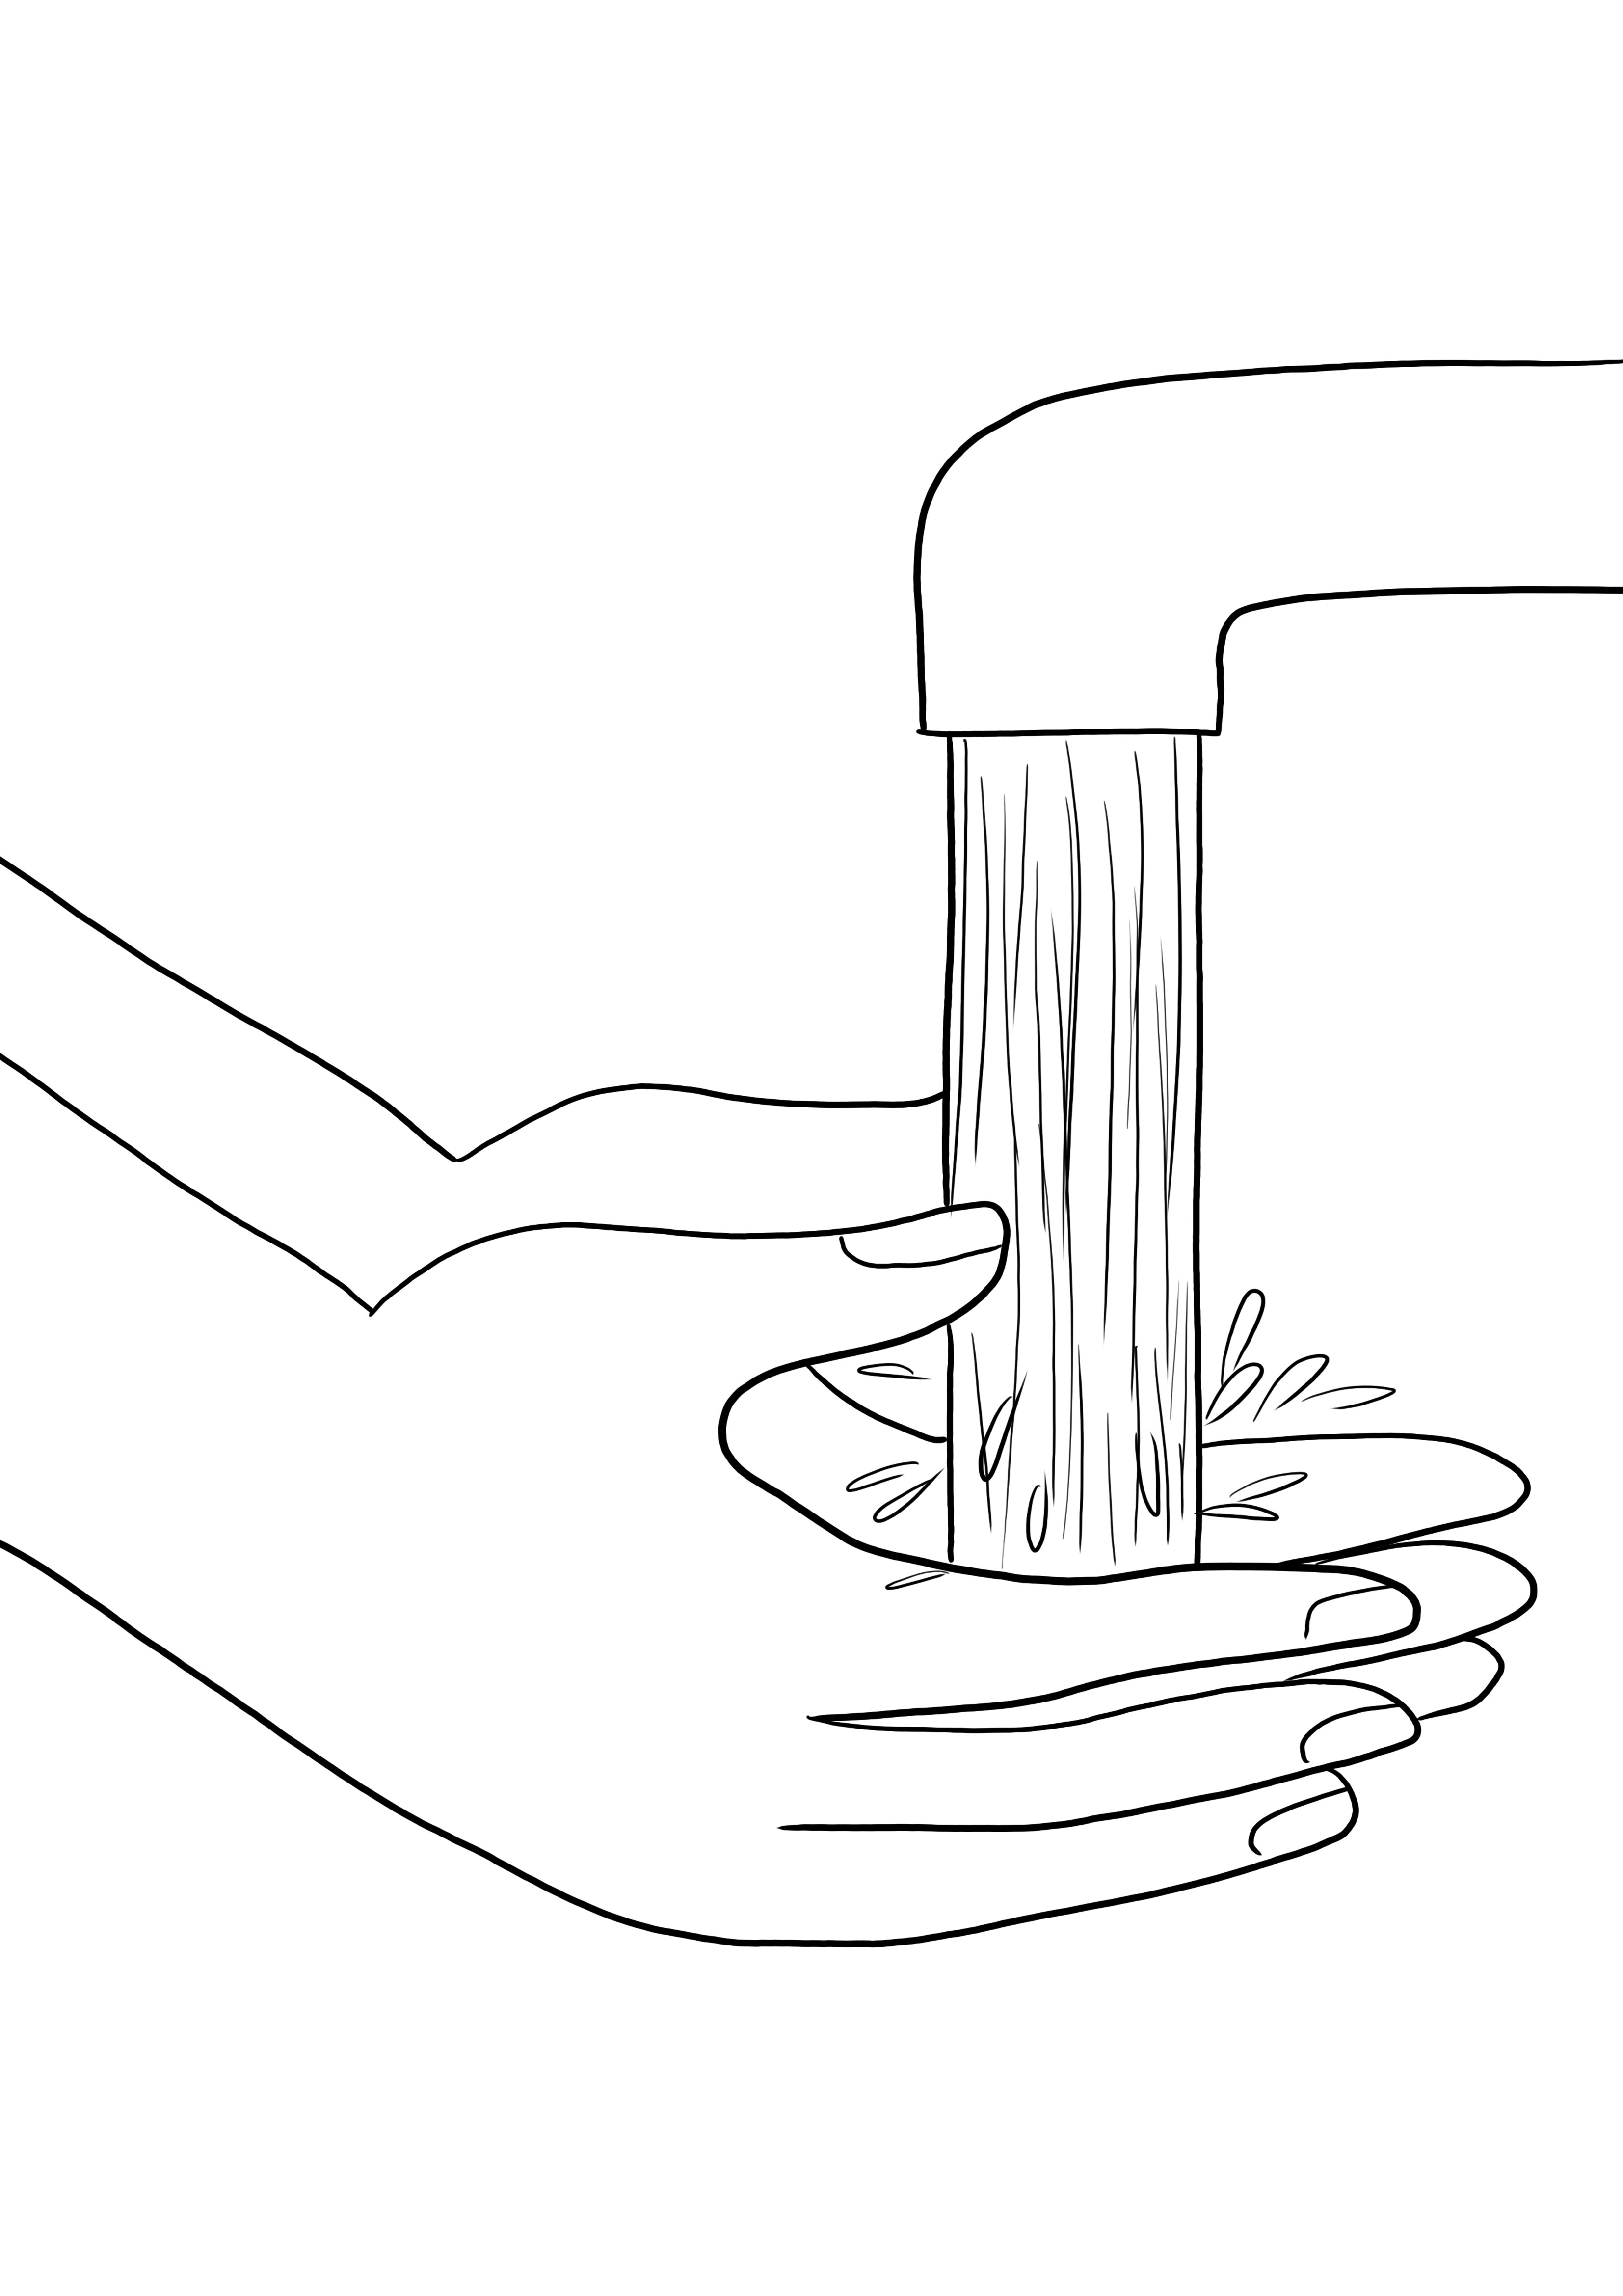 Pewarnaan Cuci Tangan Sederhana dan pencetakan gratis gambar-cara bagus untuk belajar tentang kebersihan